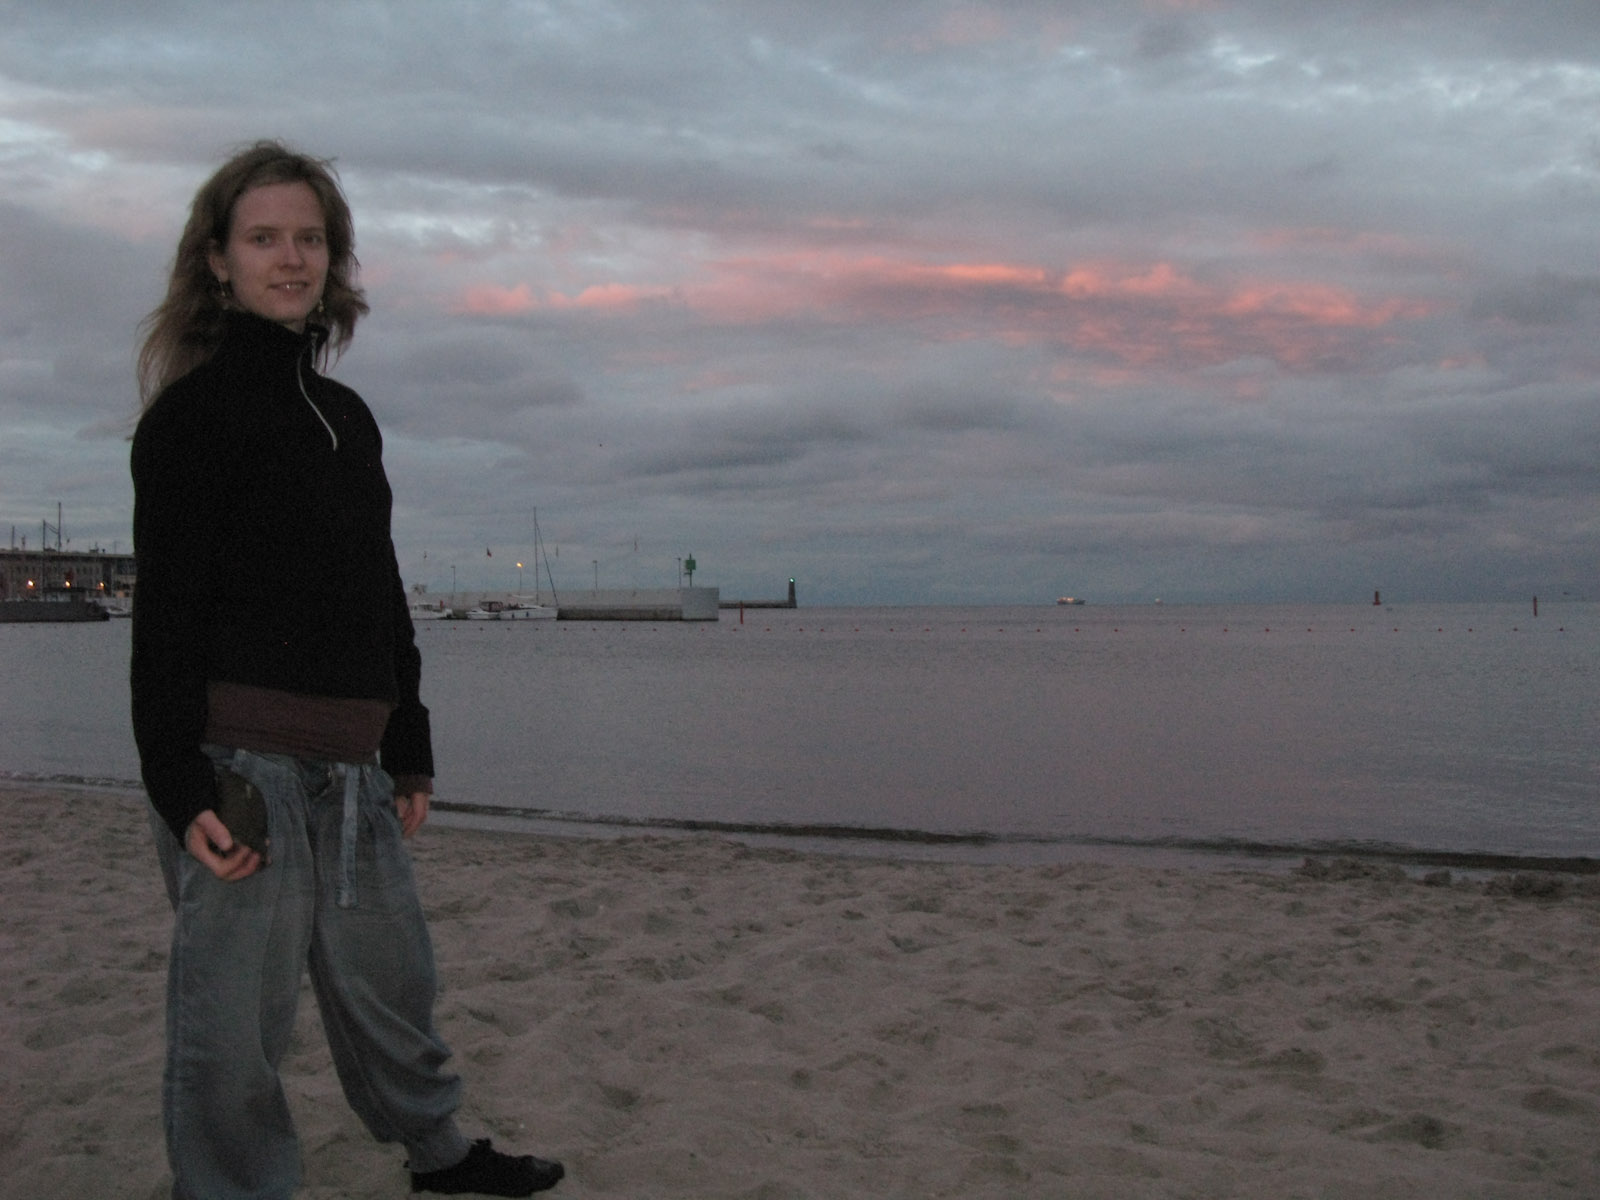 Hanne na plaÅ¼y w Gdyni